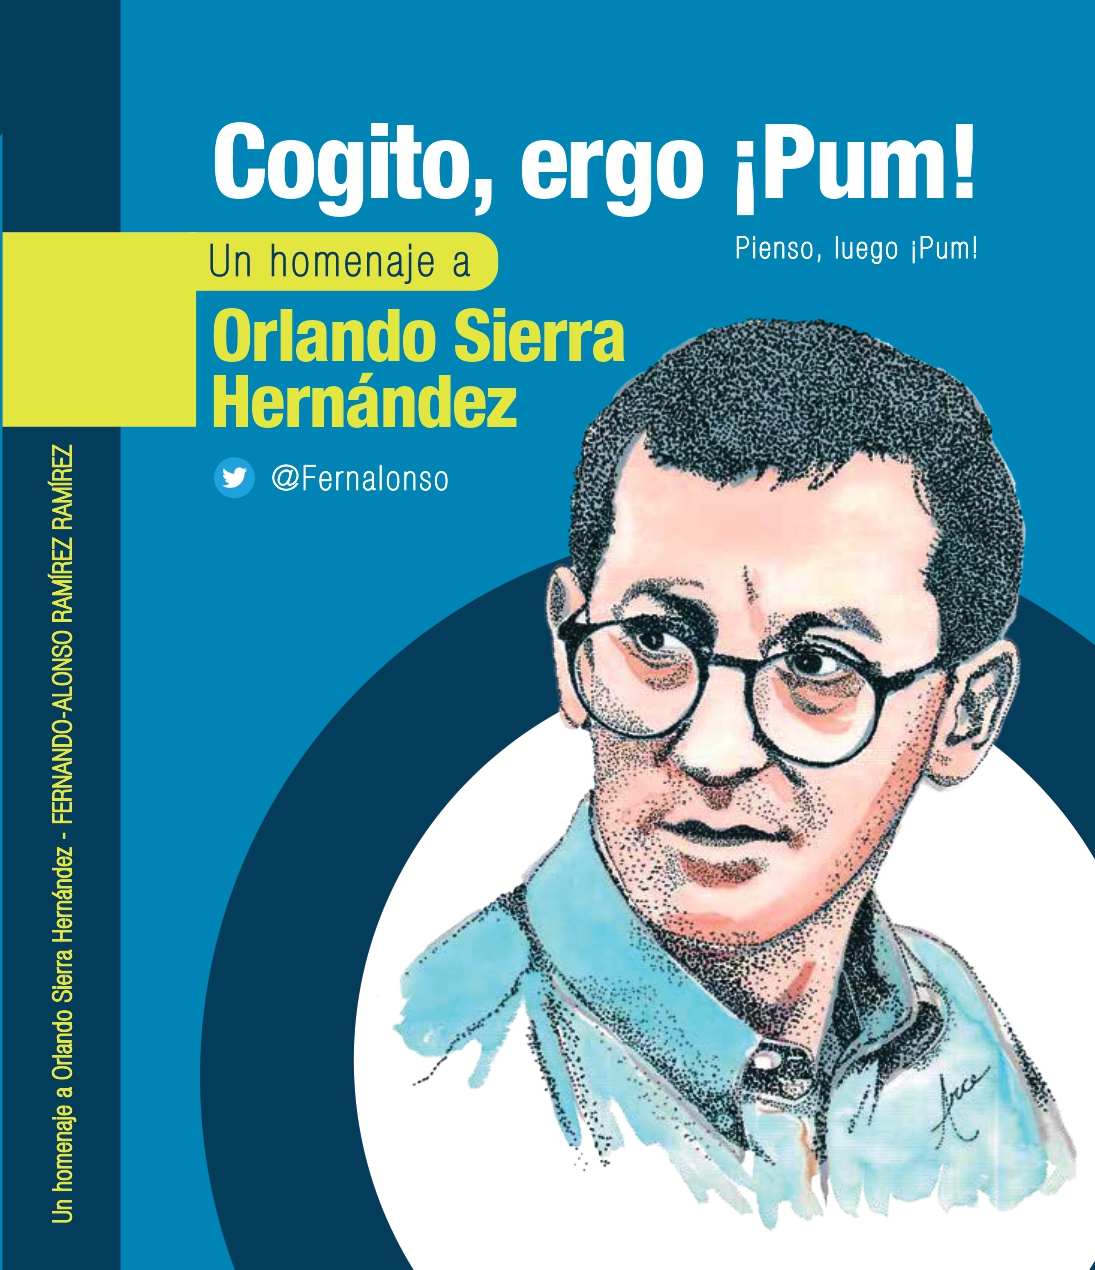 Gogito, ergom ¡pum!, es un libro dedicado a la vida periodística de Orlando Sierra. 